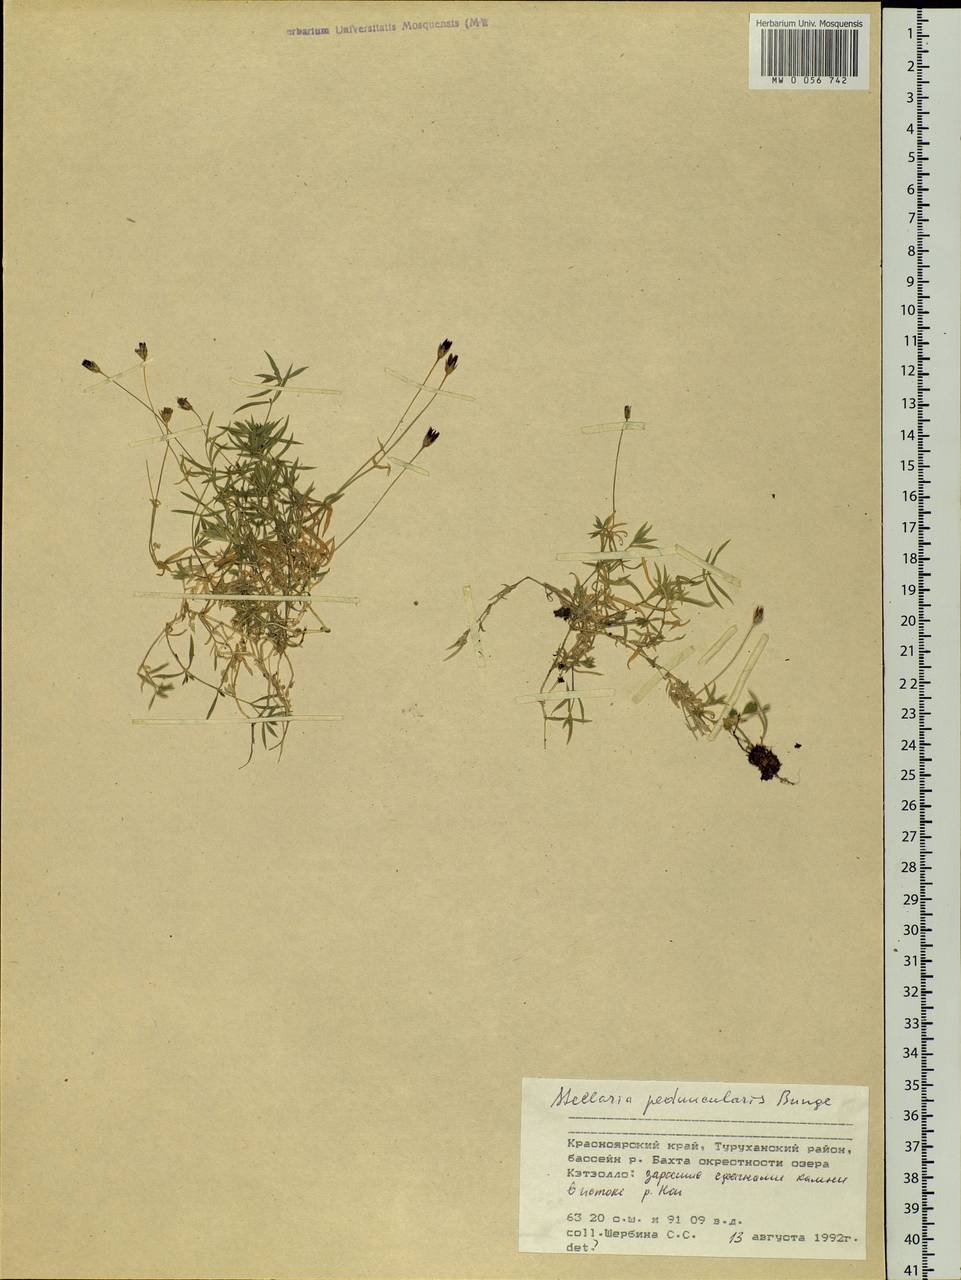 Stellaria peduncularis Bunge, Siberia, Central Siberia (S3) (Russia)